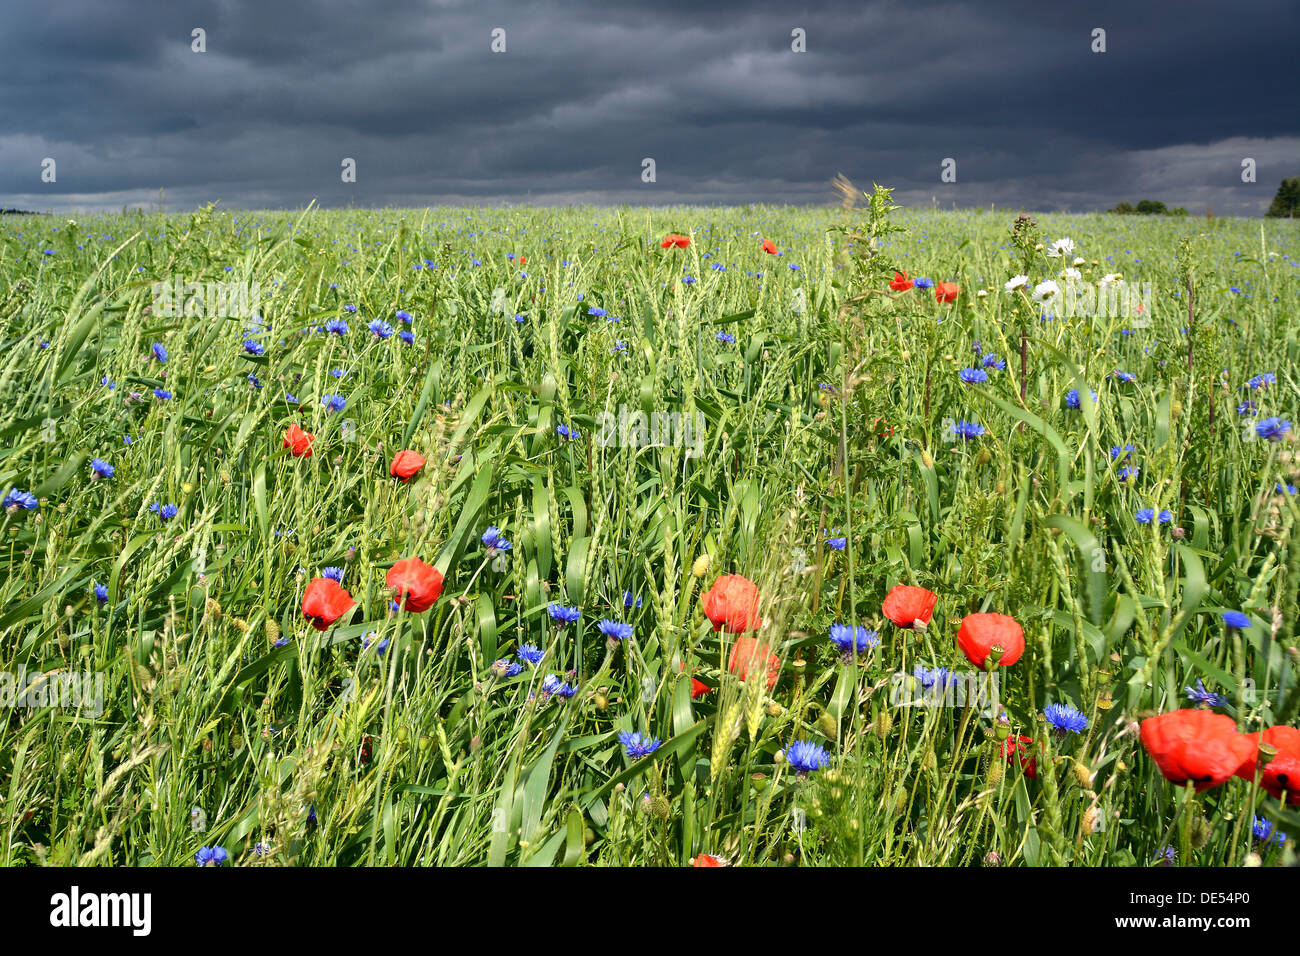 Feld Struktur mit Mohn Blumen vor einem herannahenden Gewitter, Rennsteig, Blankenstein, Thüringen, Deutschland Stockfoto